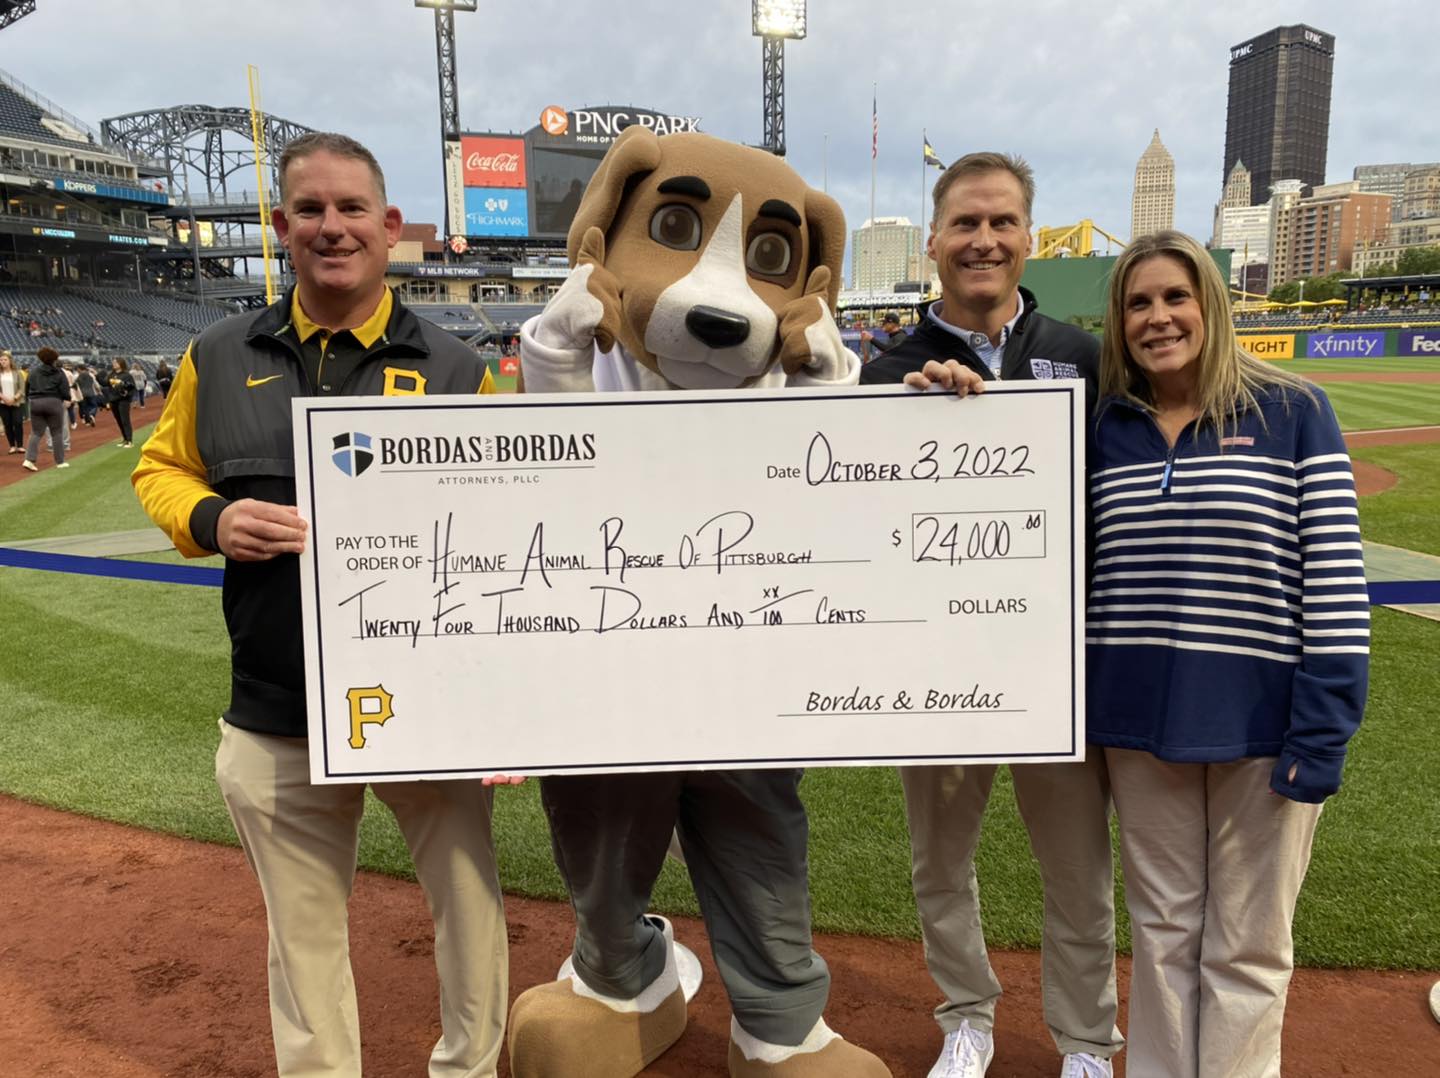 Bordas & Bordas donation of $24000 to Humane Animal Rescue of Pittsburgh through Pirates Partnership